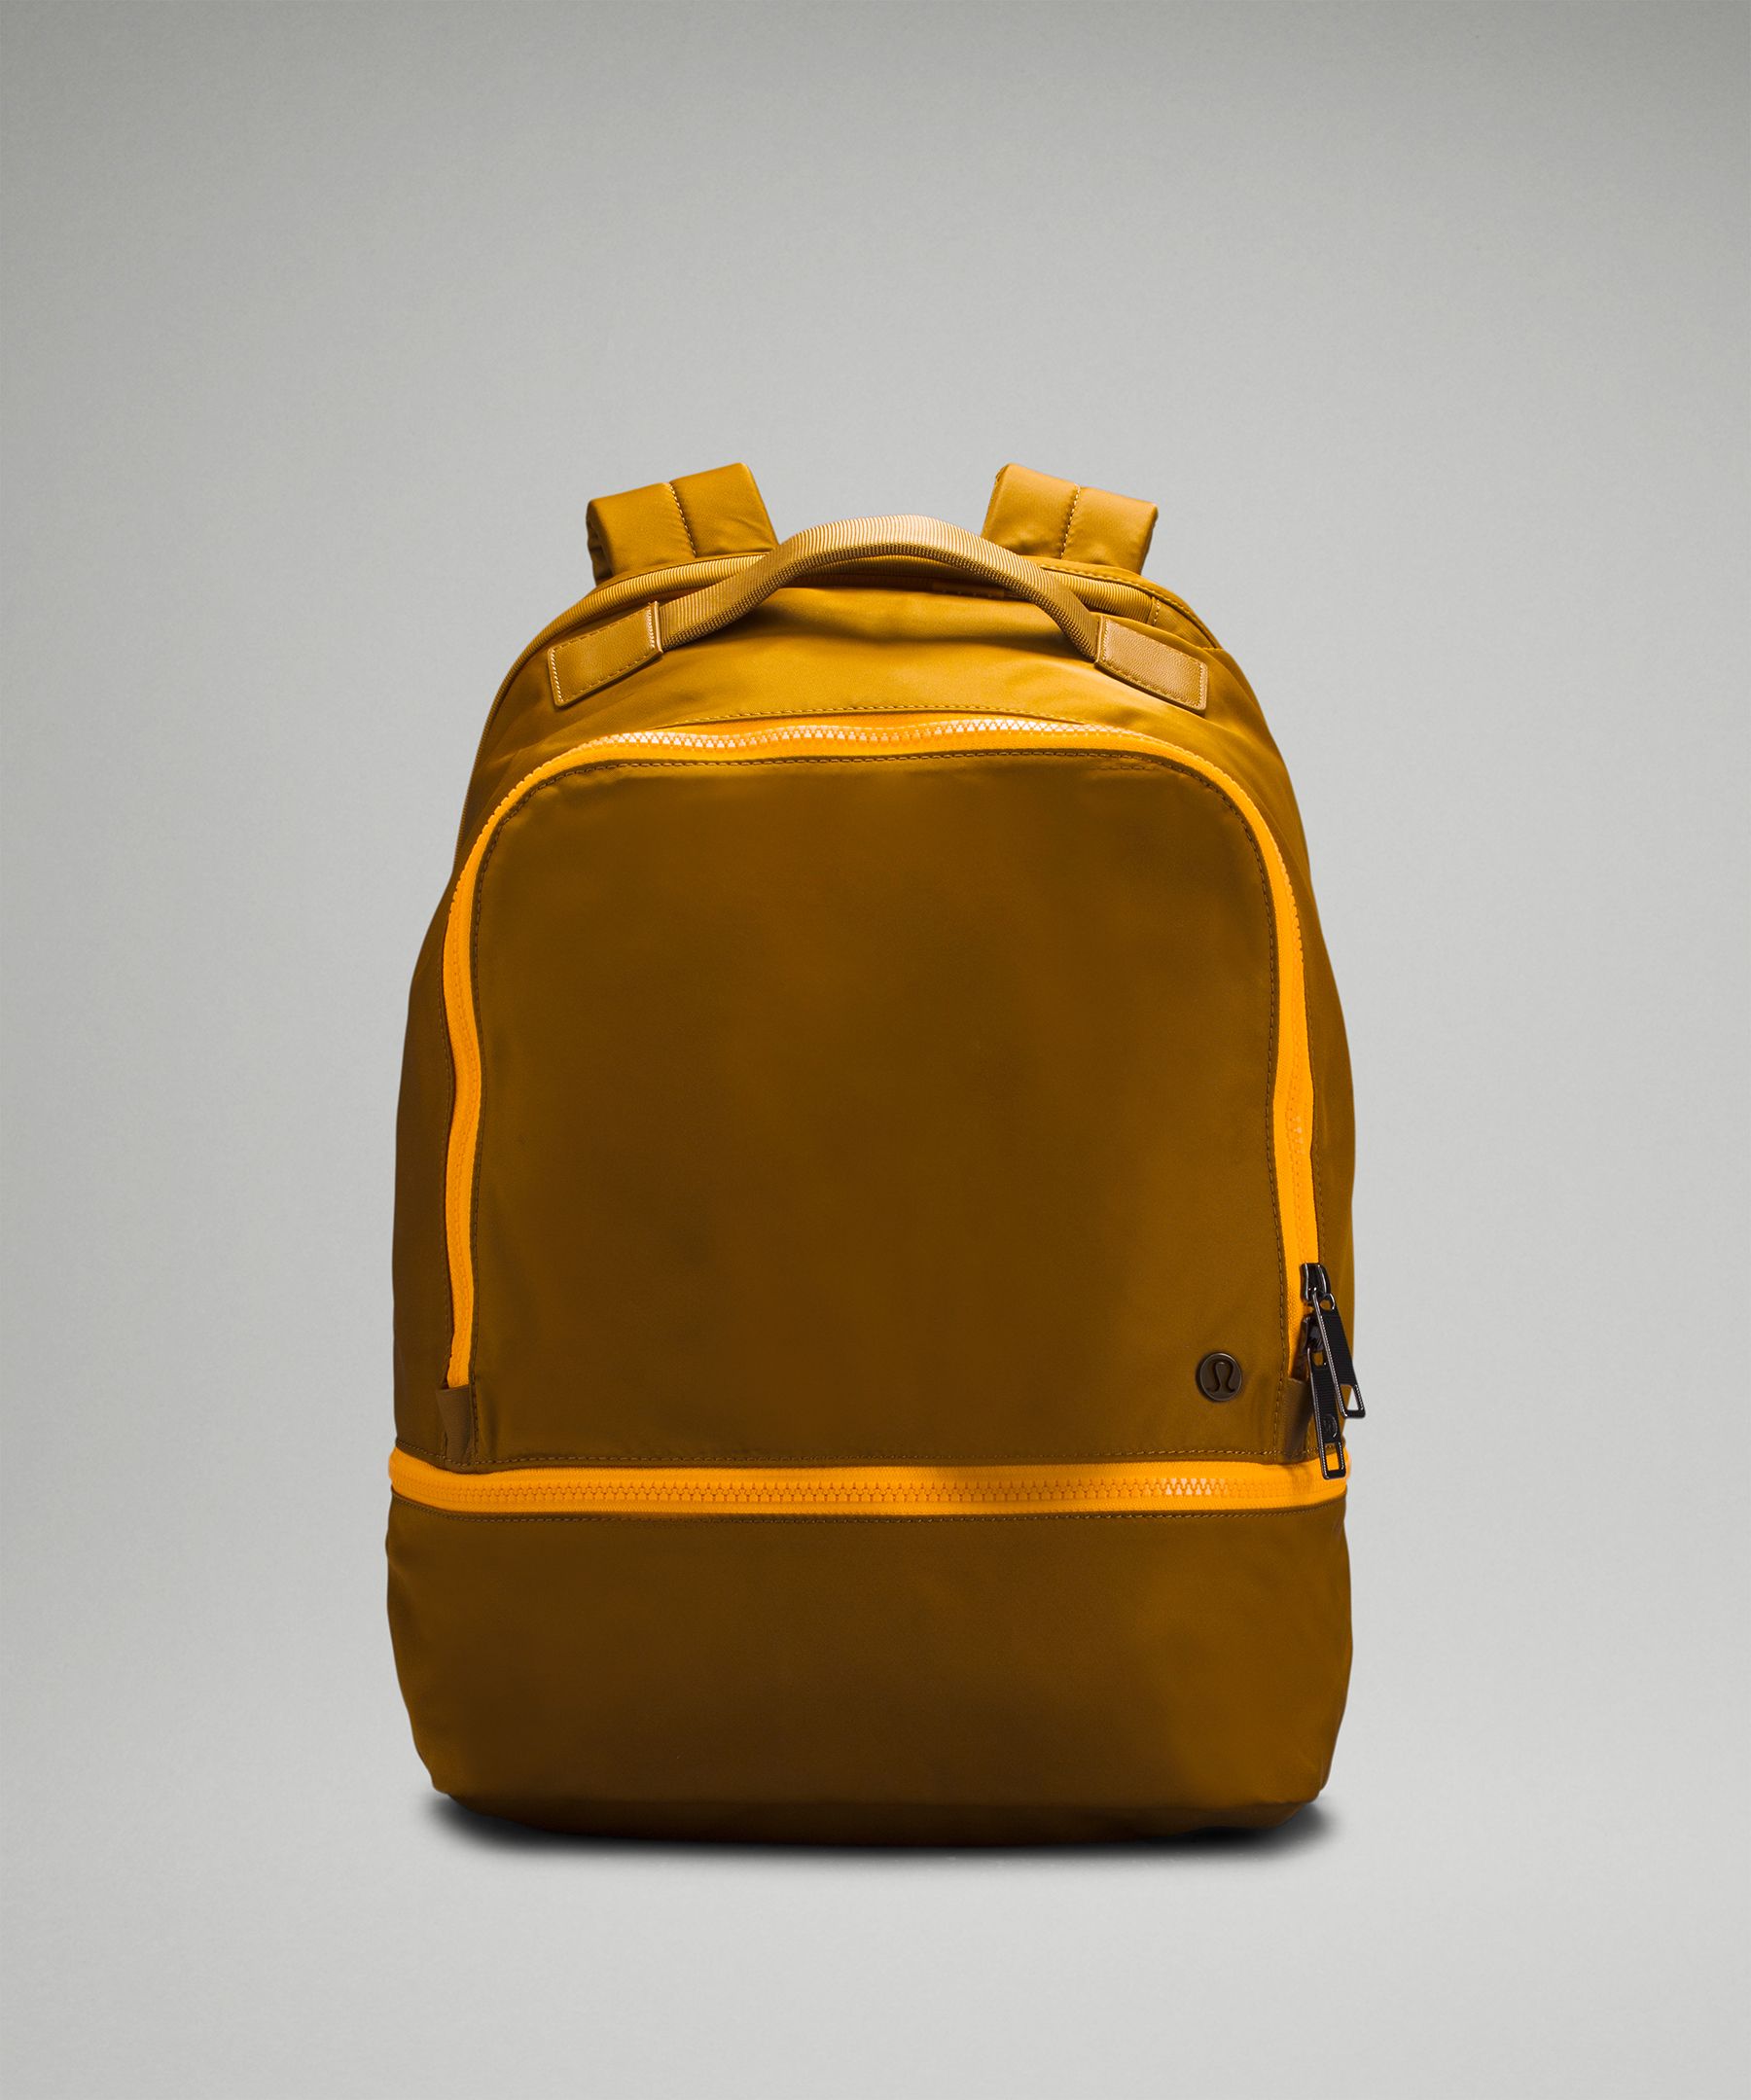 NWT Lululemon City Adventurer Backpack 20L Burnt Caramel Copper Brown Color